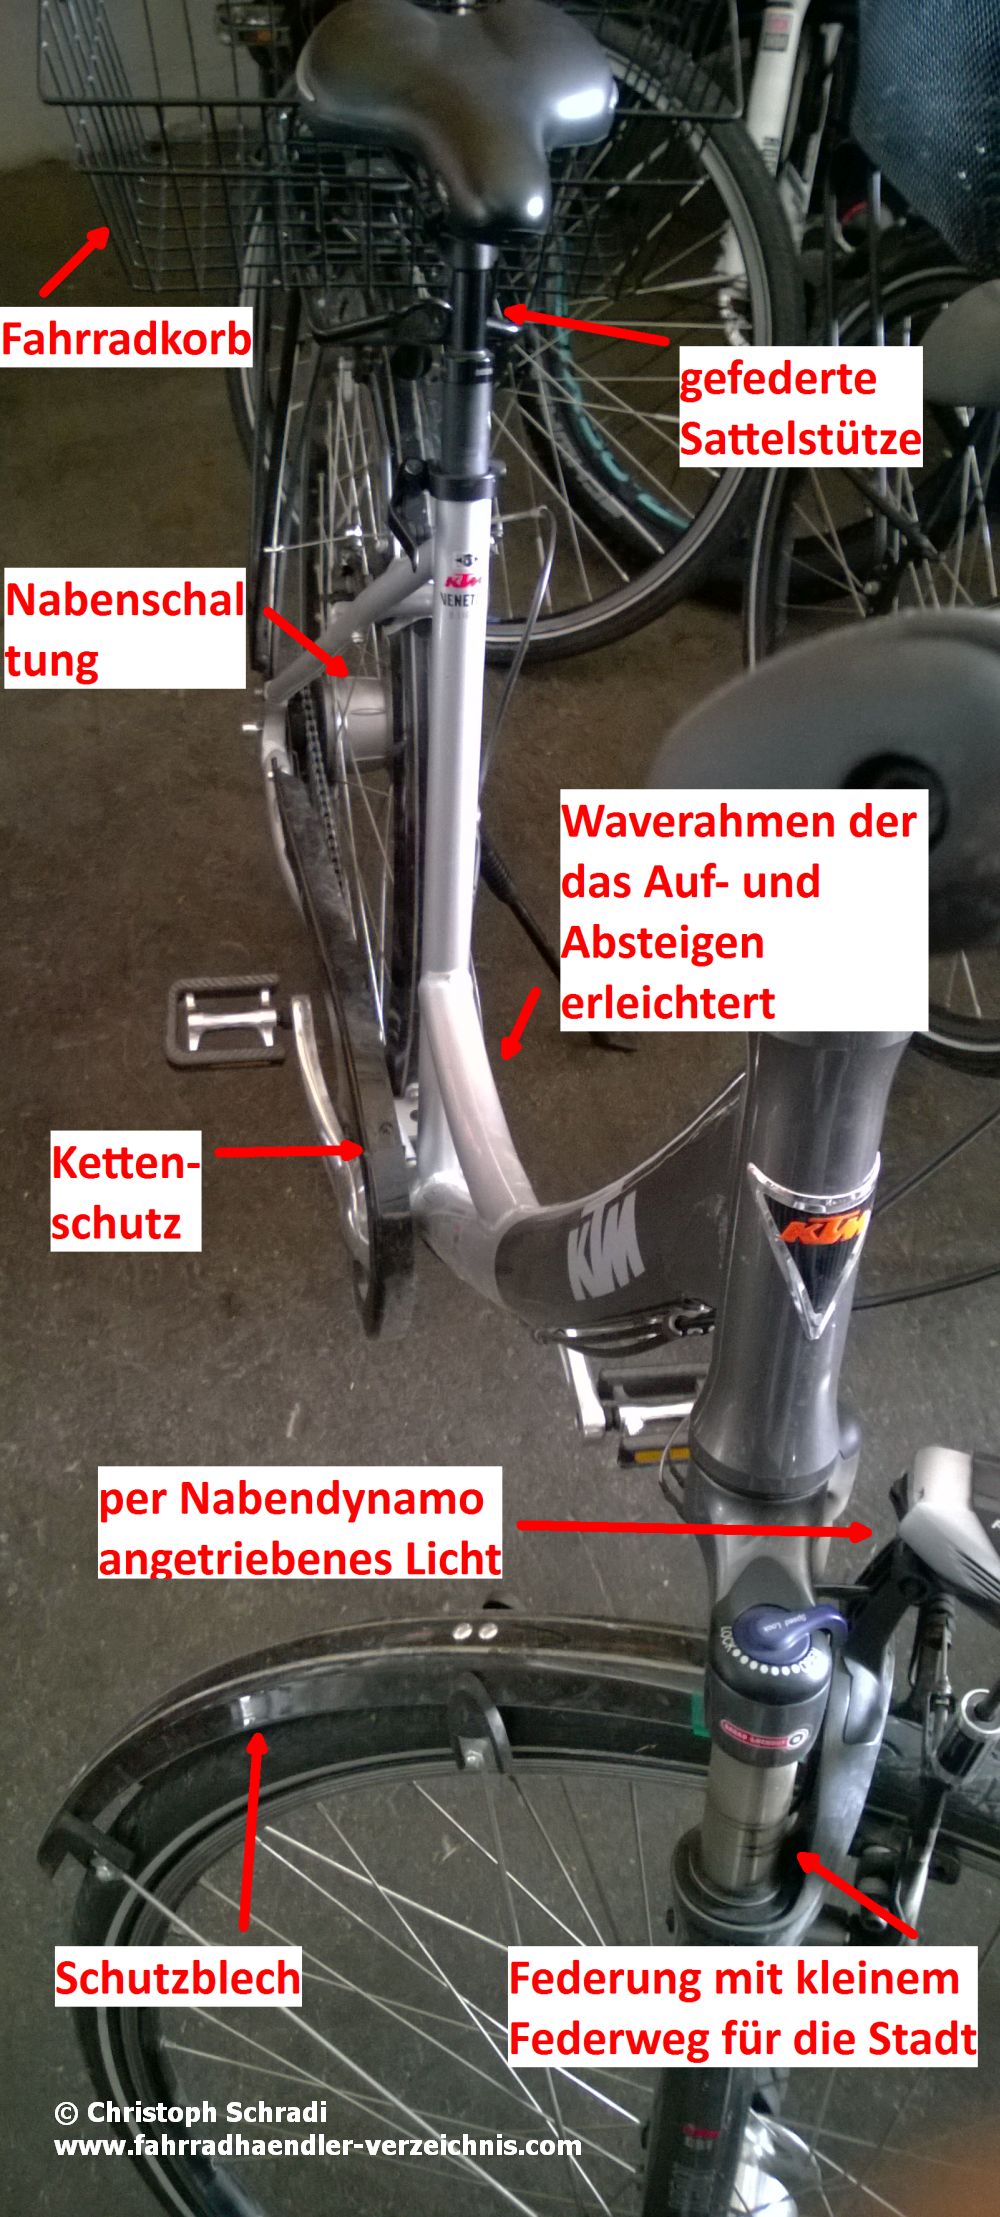 City bike mit Fahrradkorb, Nabenschaltung, Sattelfederung und gefederten Vorderradgabel